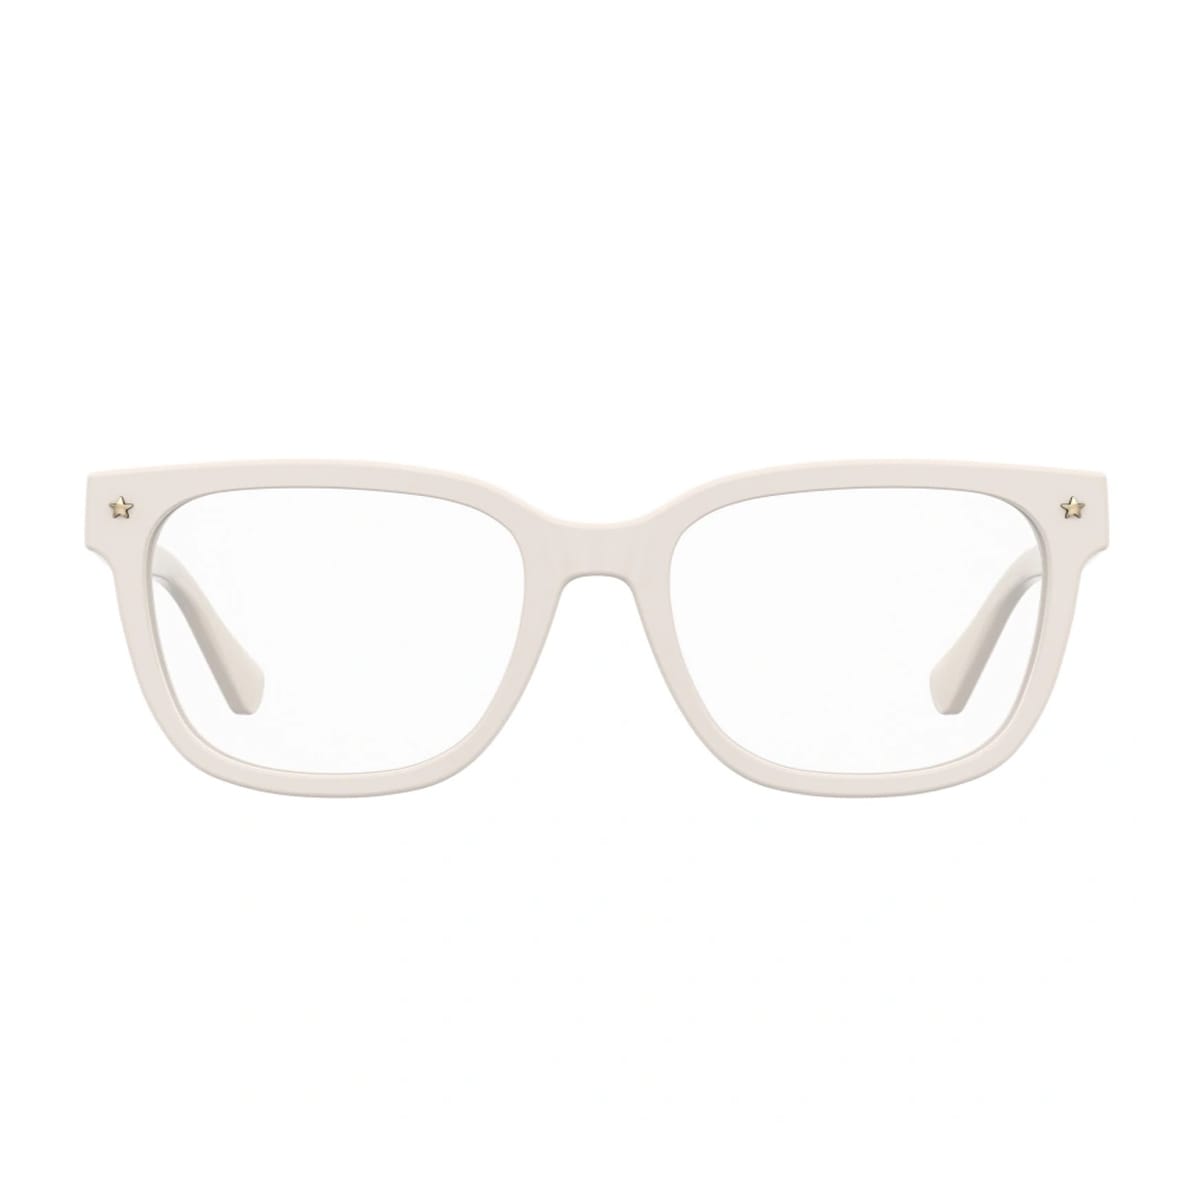 Cf 7027 Vk6/18 White Glasses